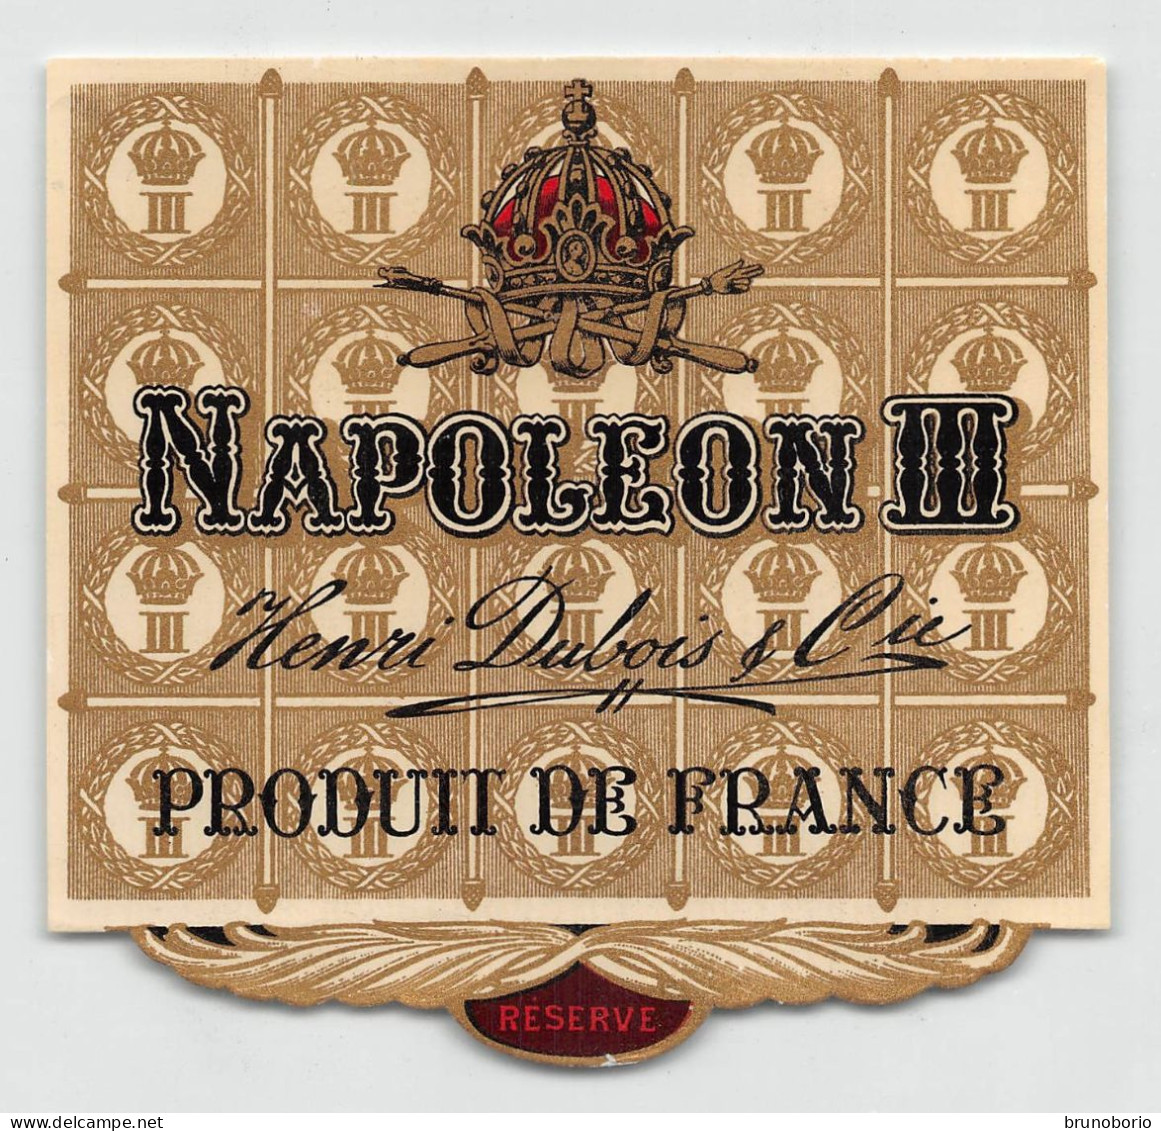 00049 "NAPOLEON III - ENRI DUBOIS & CIE - PRODUIT DE FRANCE" ETICH. ORIG. - Alkohole & Spirituosen